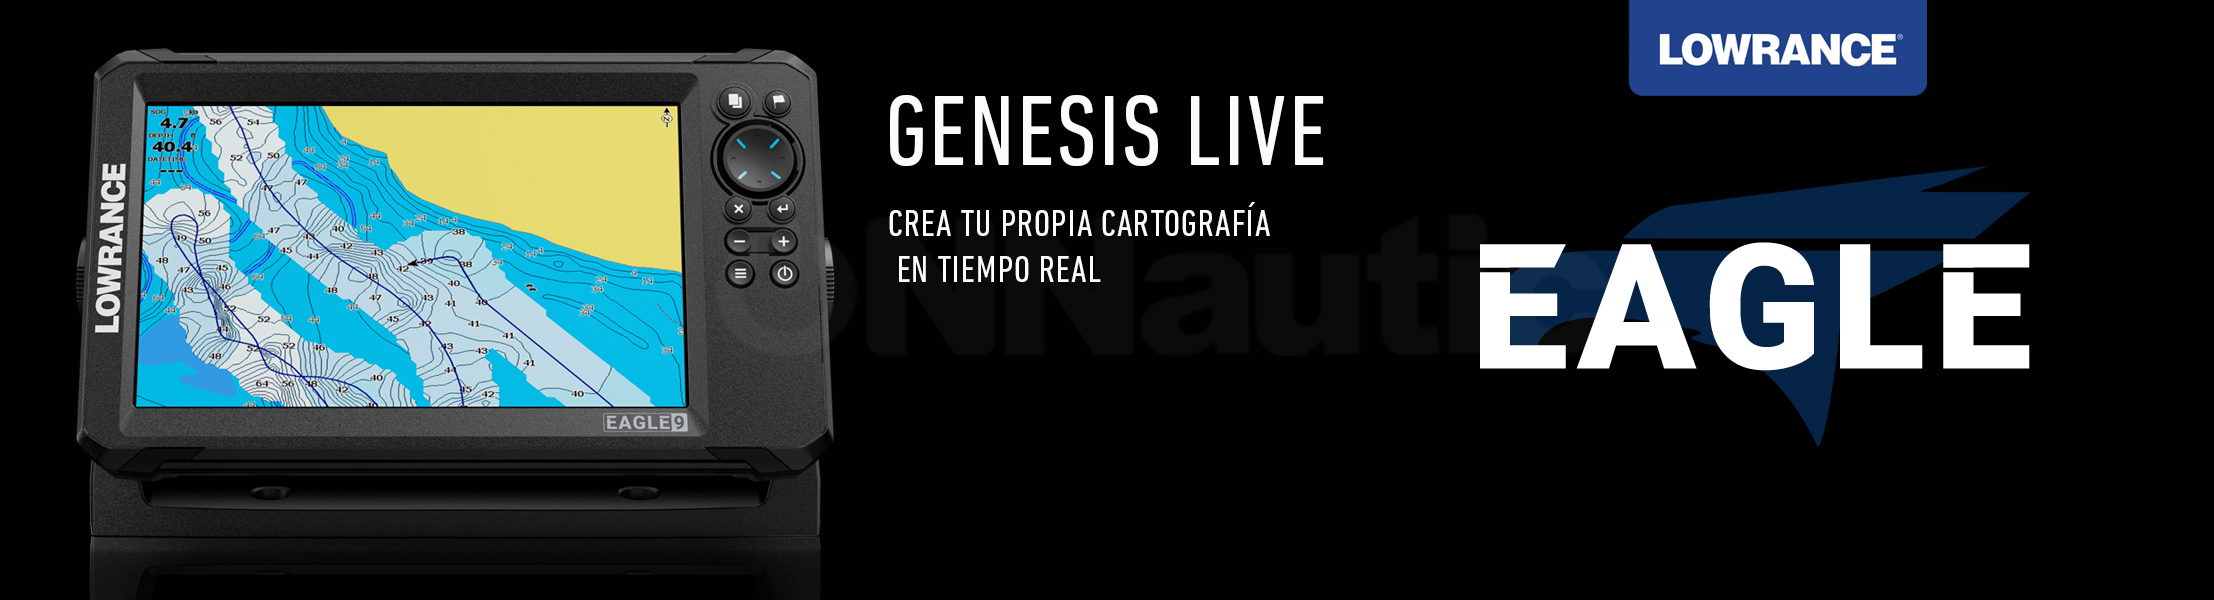 Crea tu propia cartografía en tiempo real con Genesis Live. ONNautic